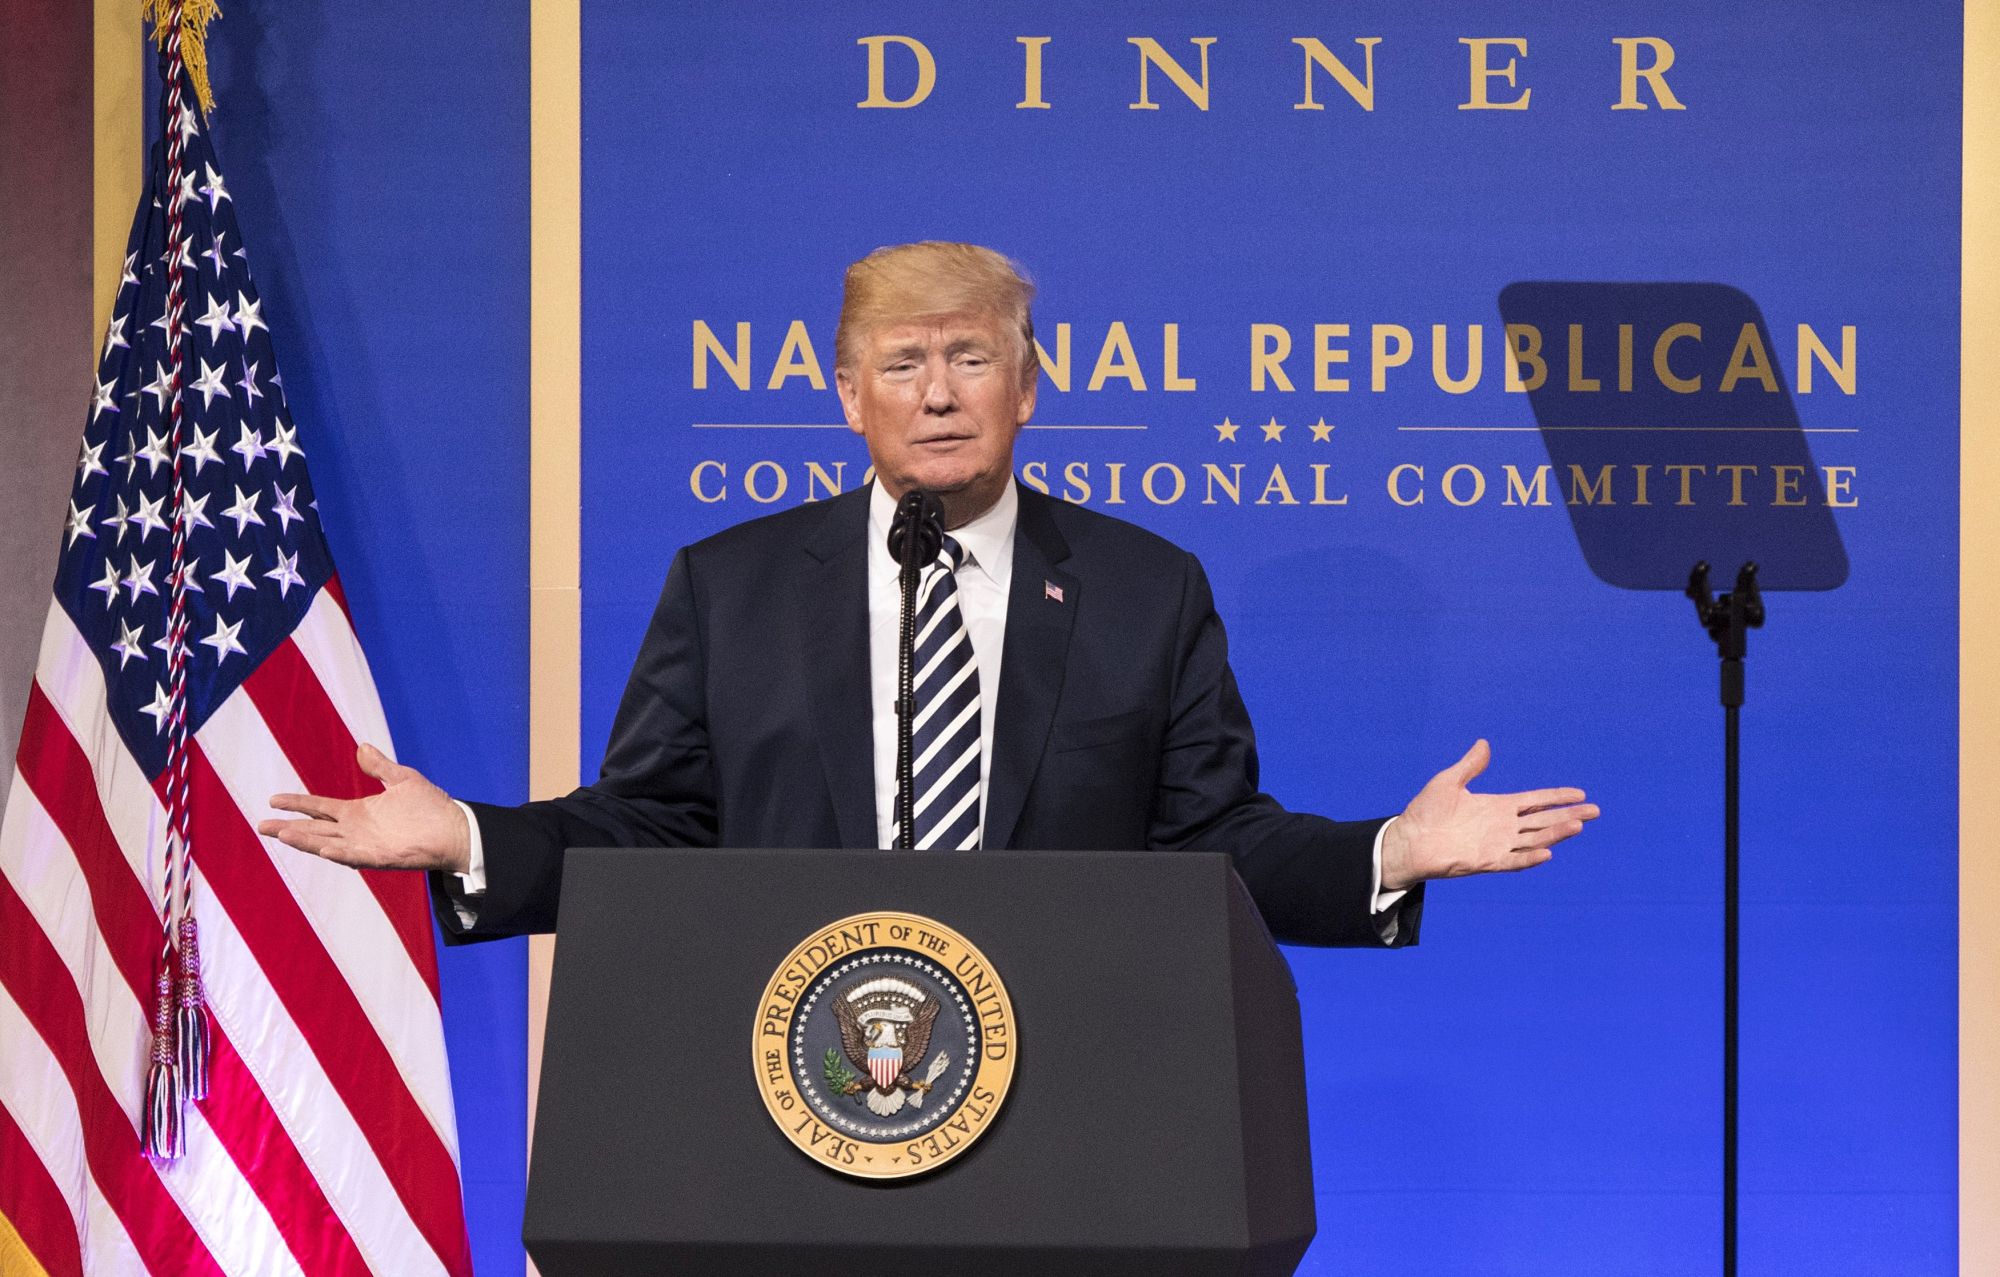 Donald J. Trump amerikai elnök beszédet mond a nemzeti republikánus kongresszusi bizottság márciusi vacsoráján Washingtonban, 2018. március 20-án. EPA/KEVIN DIETSCH / POOL